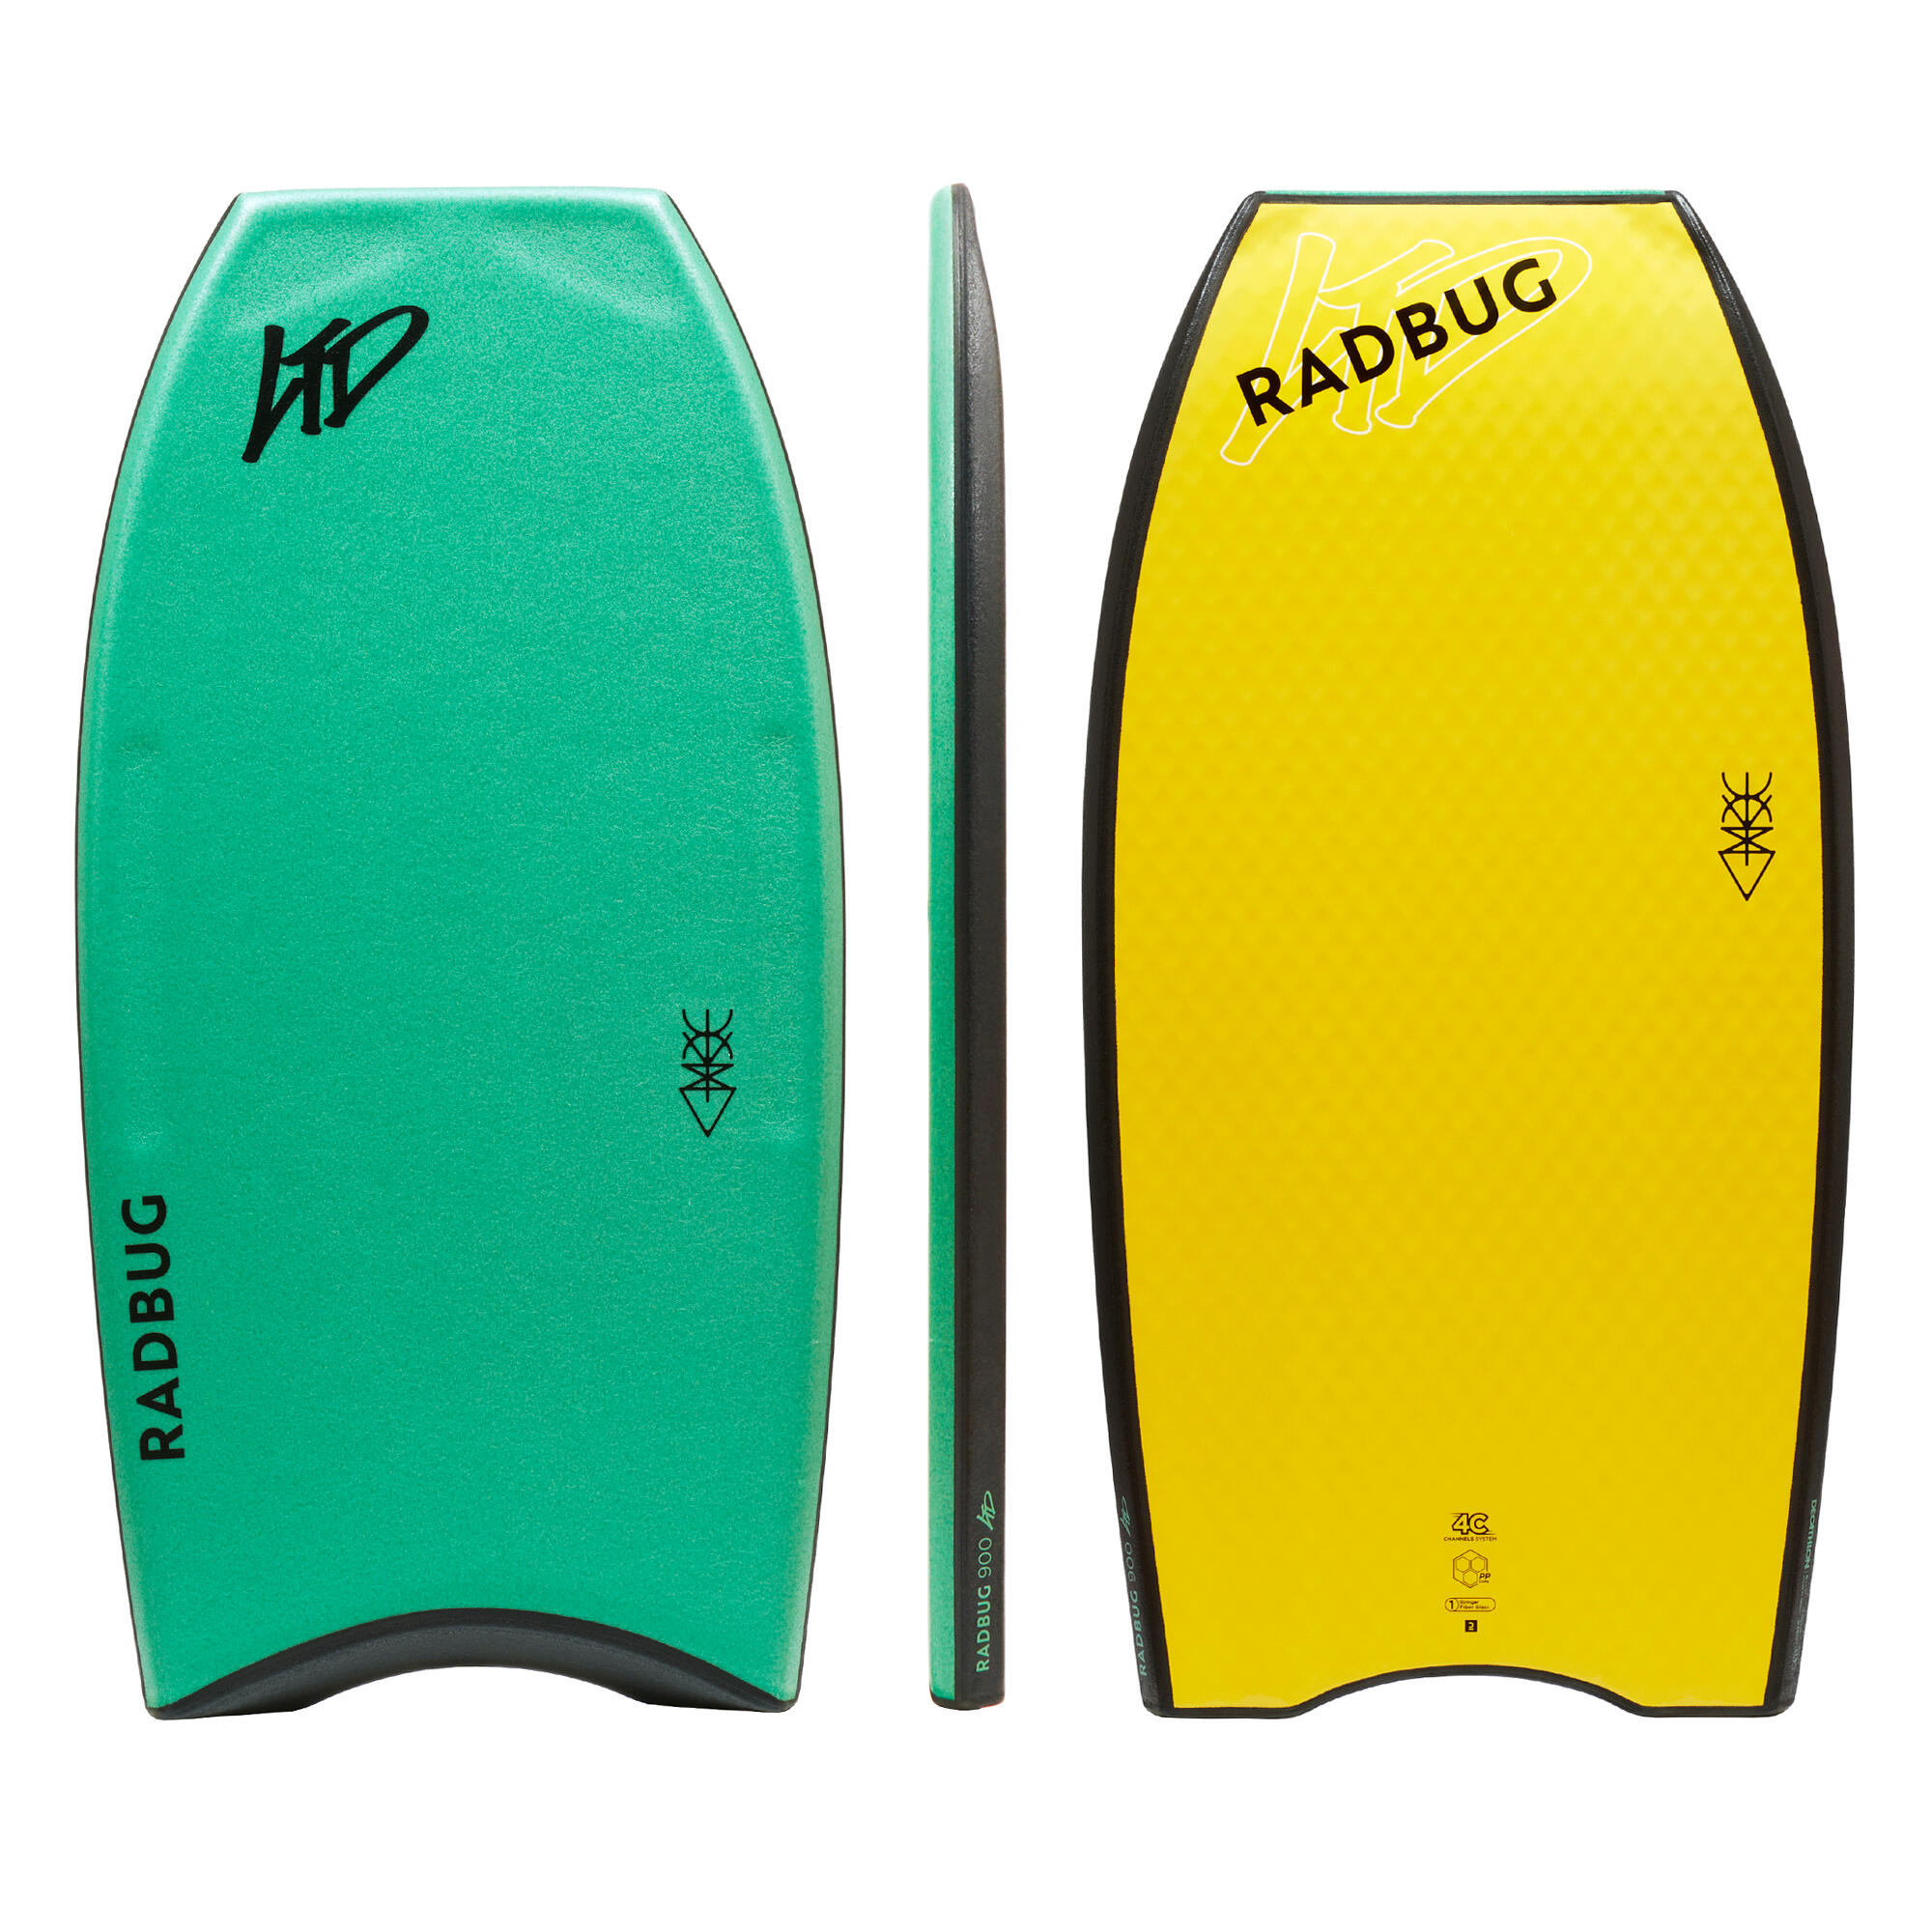 RADBUG Bodyboard - 900 Pro Model Limited Edition grün/gelb XS